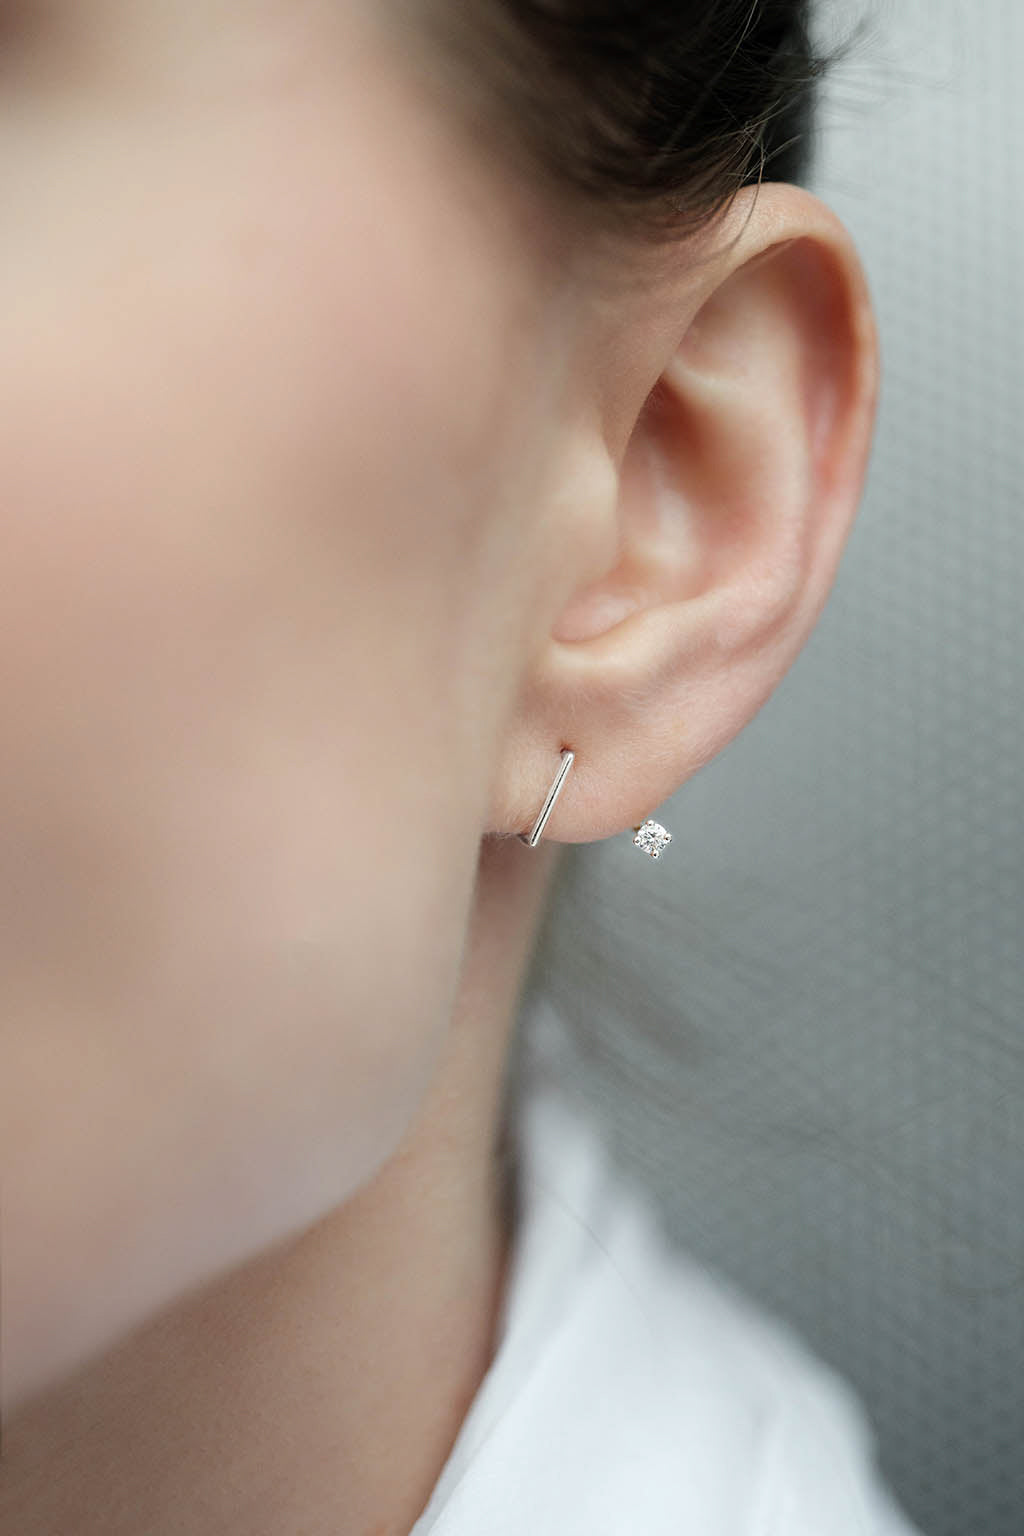 2'5 mm diamond Z gold earring